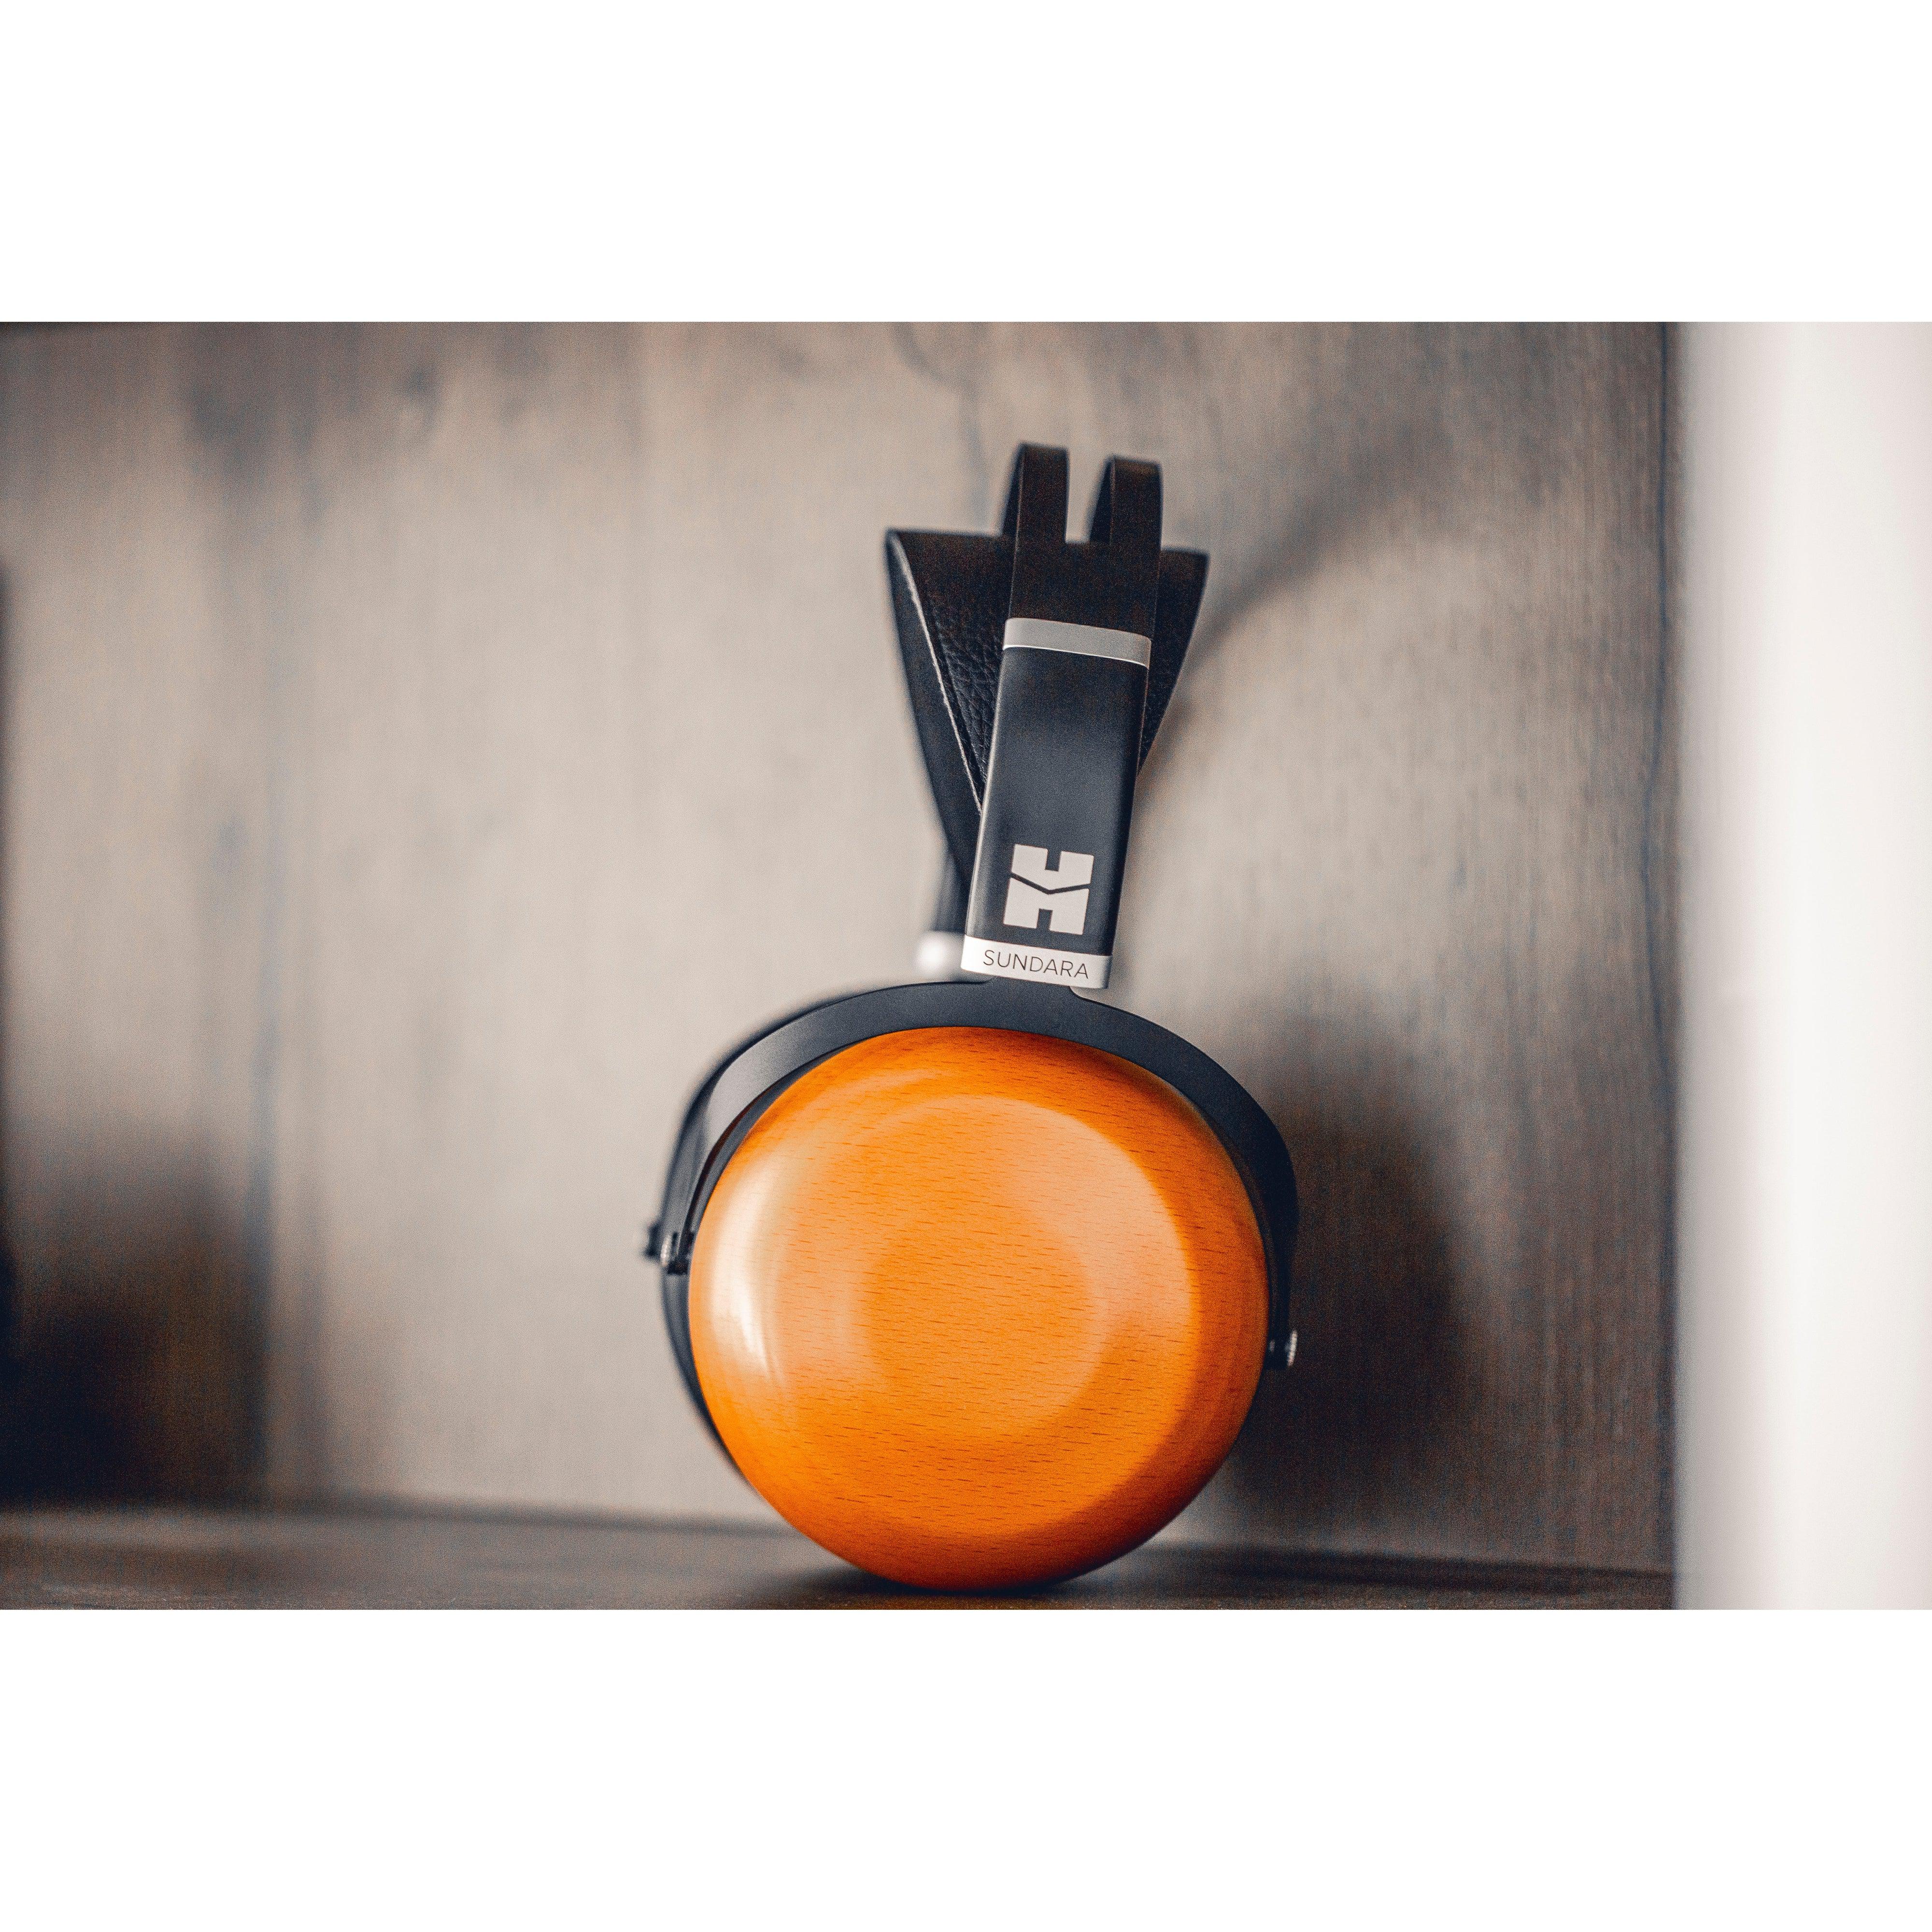 HIFIMAN Sundara Closed-Back | Planar Magnetic Headphones